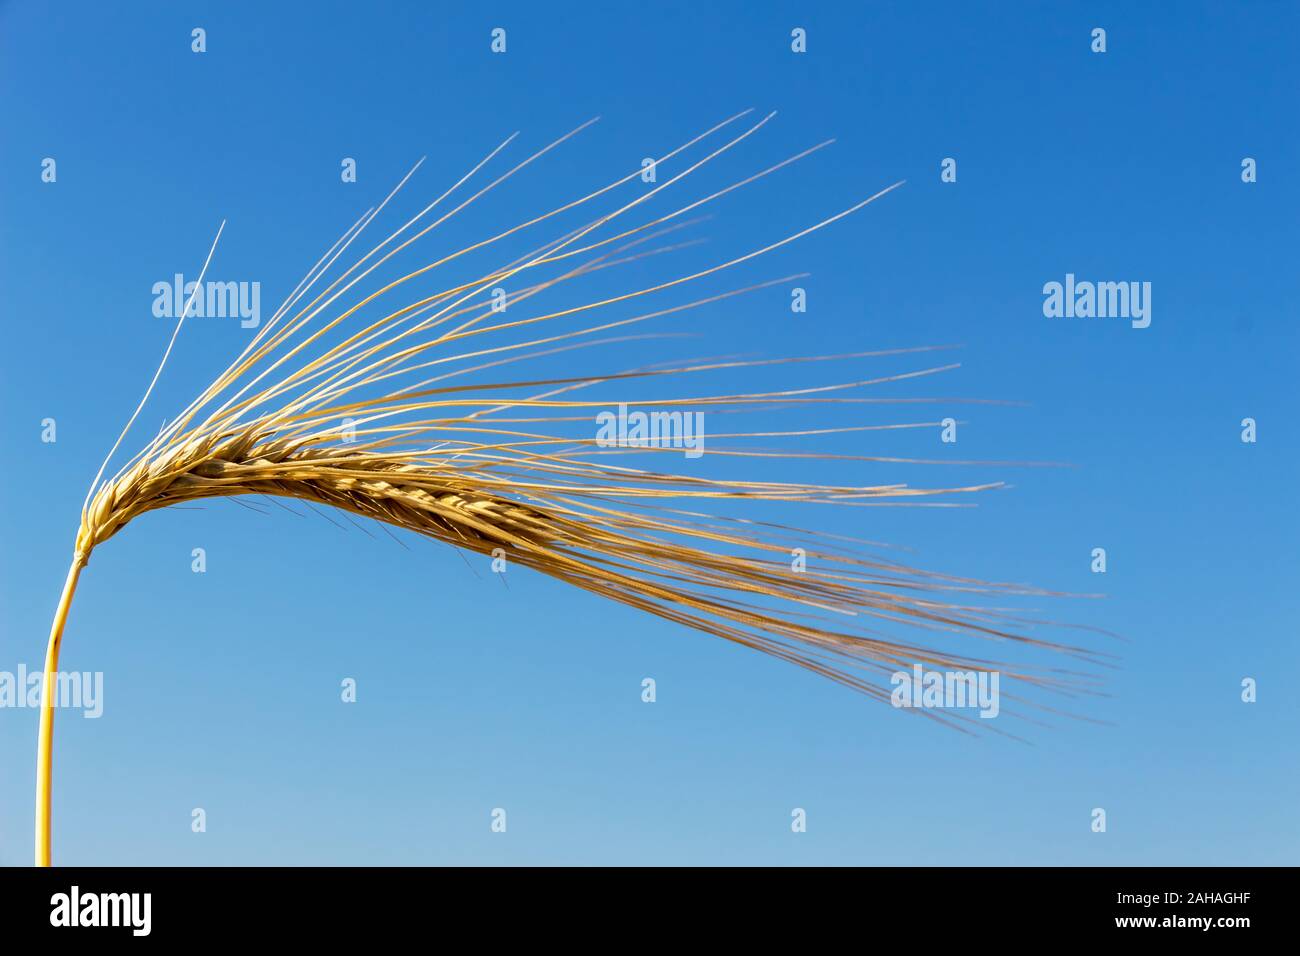 Ein Getreidefeld mit Gerste wartet auf die Ernte. Symbolfoto für Landwirtschaft und gesunde Ernährung, einzelne Ähre, blauer Himmel, Stock Photo